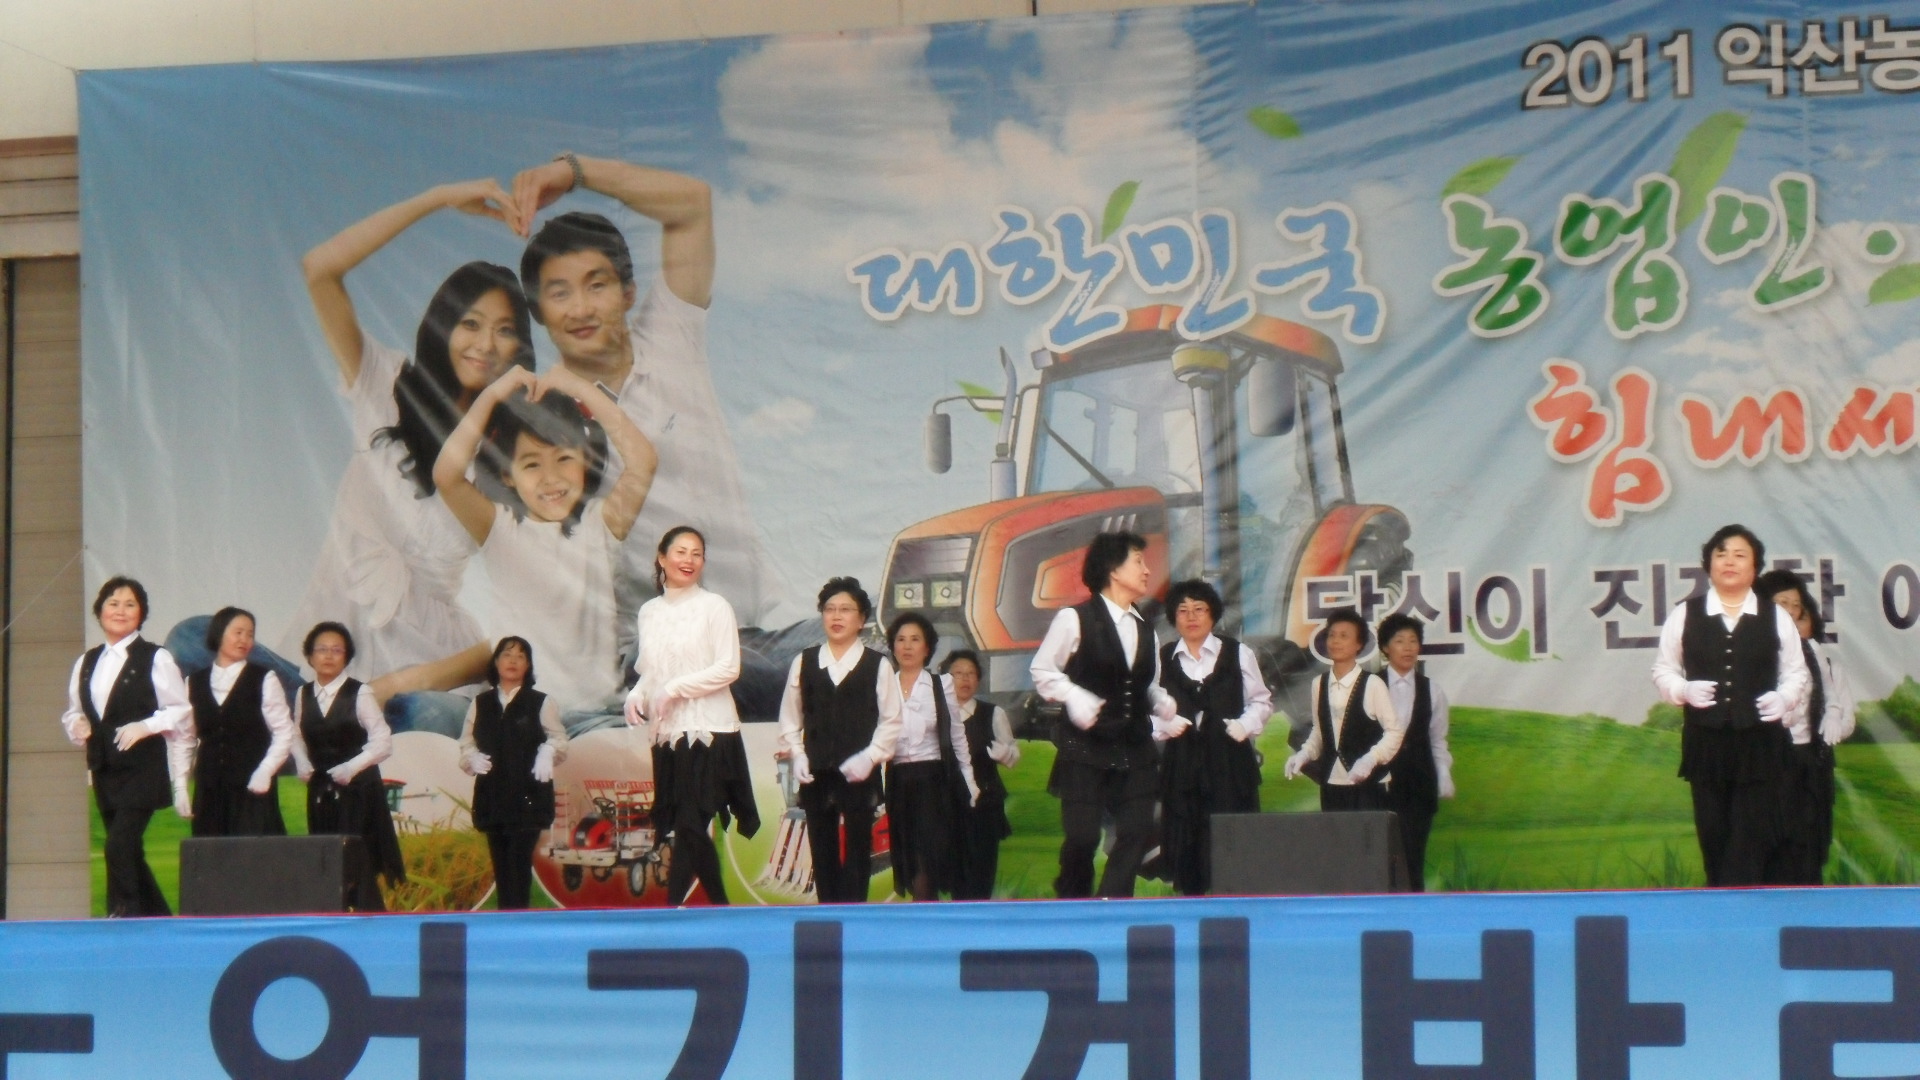 2011 익산농업기계박람회 공연(댄스스포츠팀)6